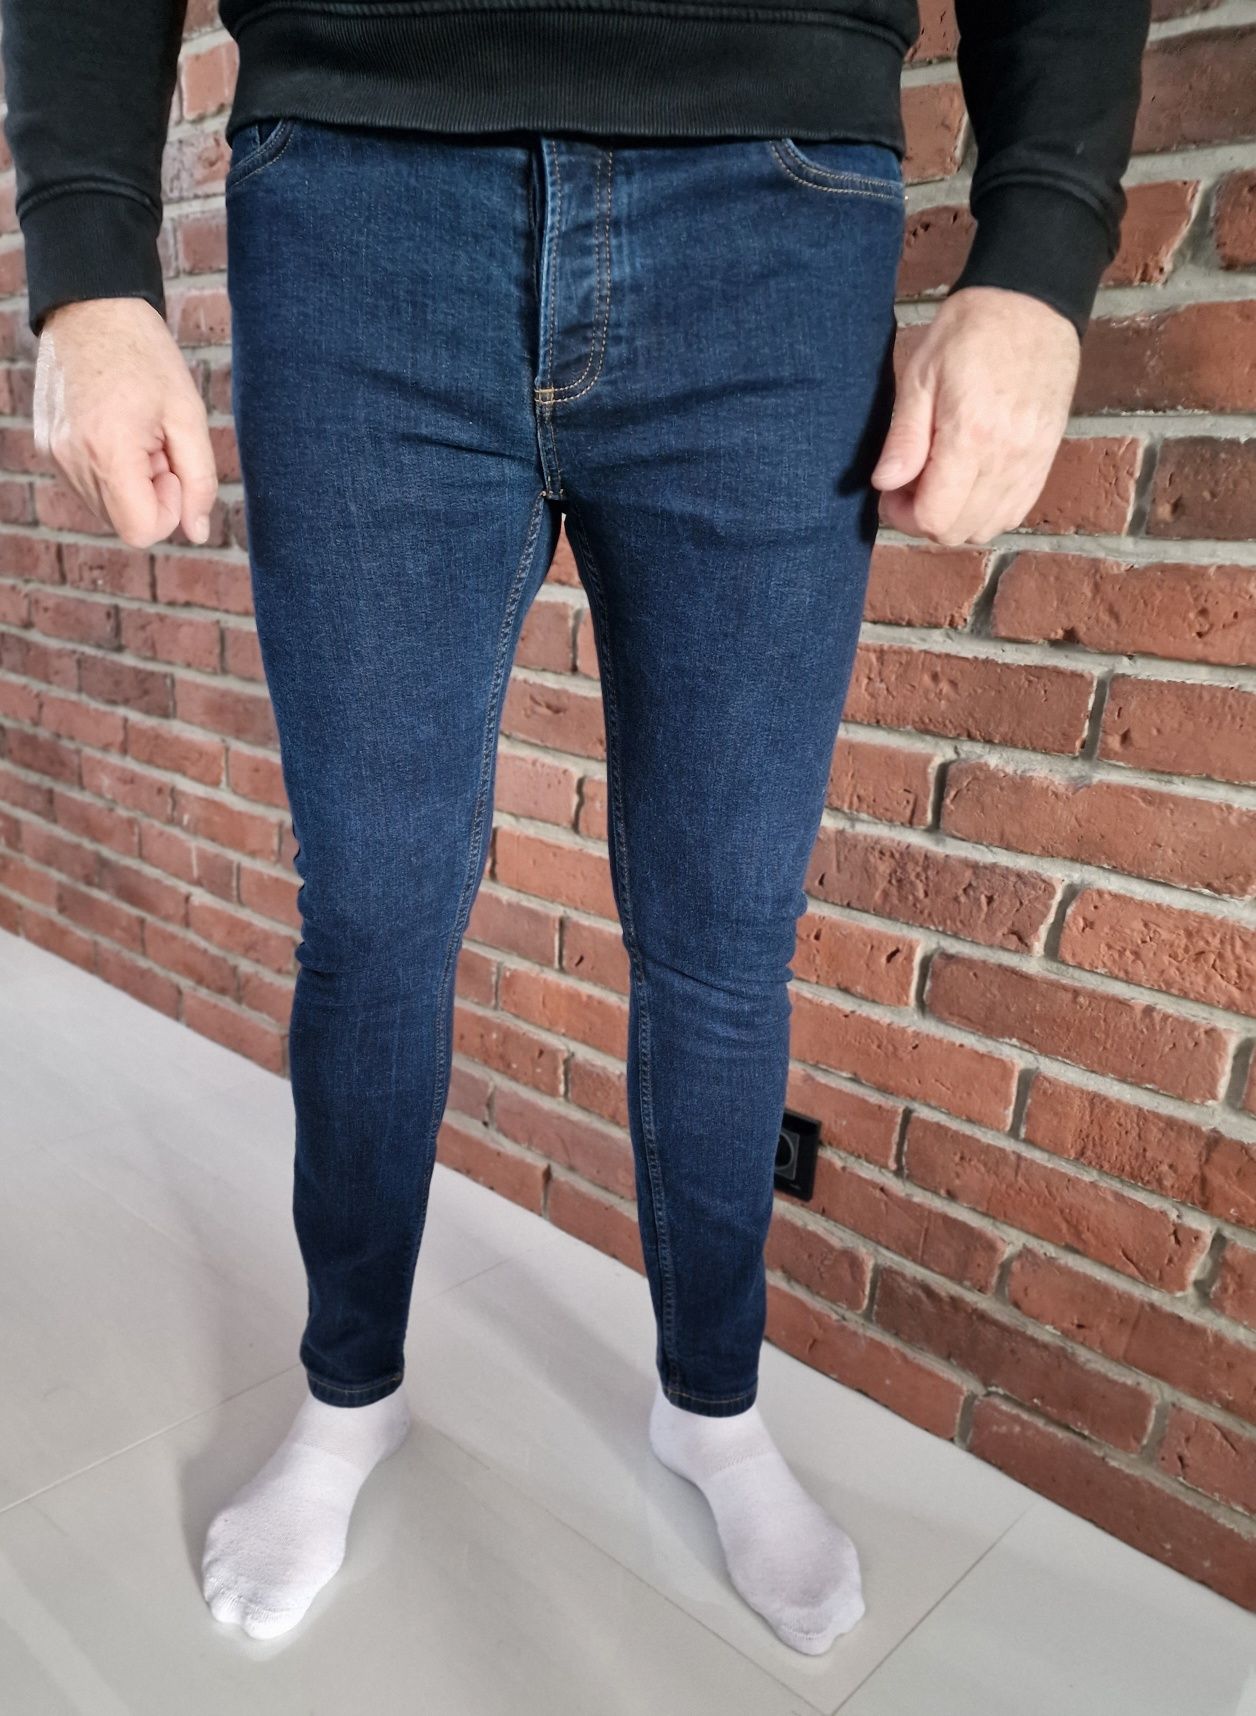 Spodnie Topman stretch skinny 36/32 XL jeansy slim rurki